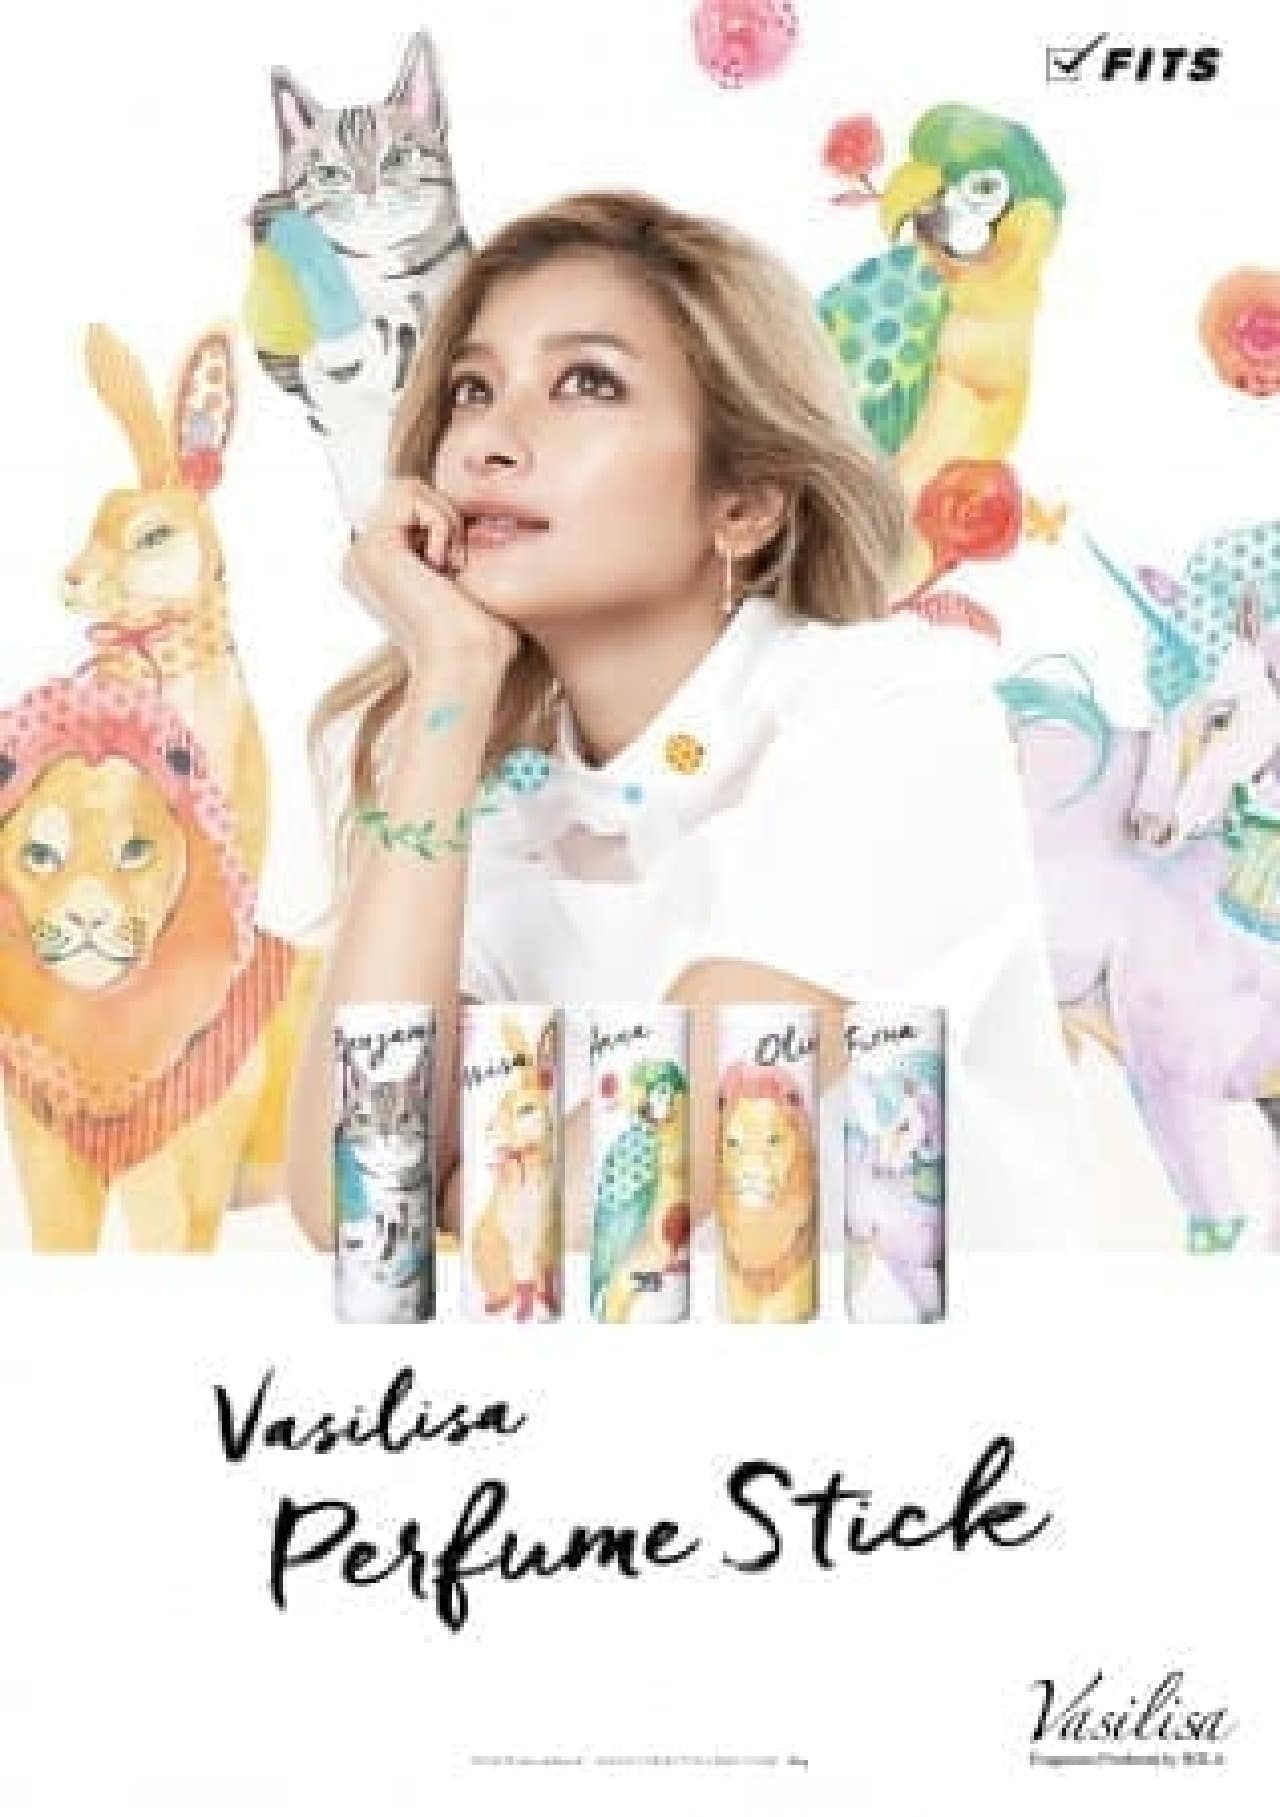 "Vasilisa" perfume stick